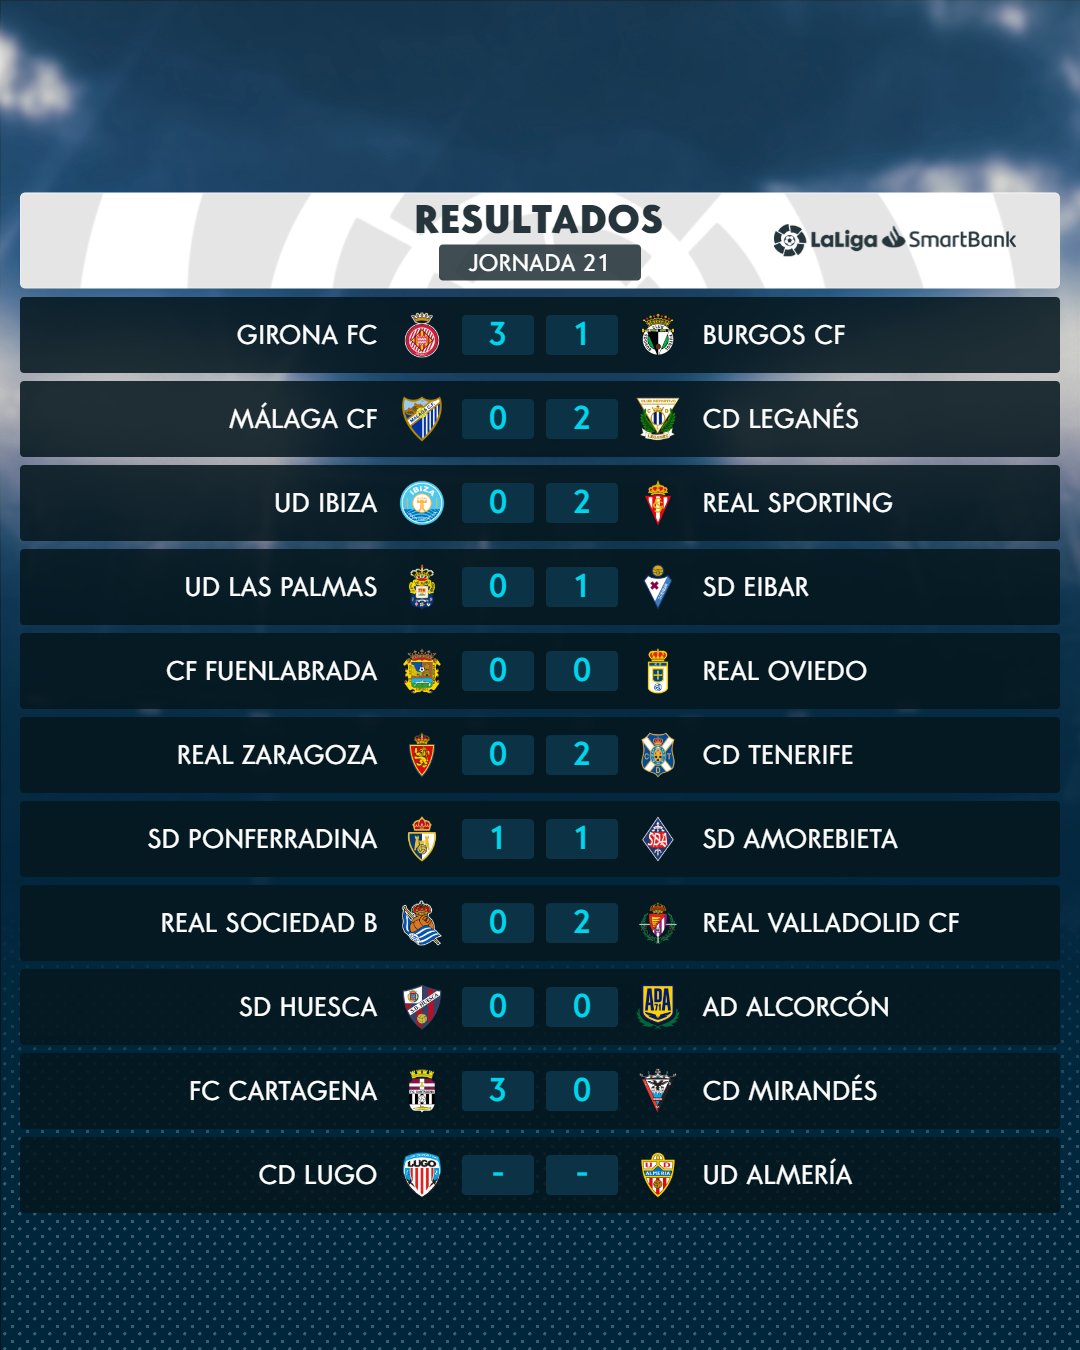 نتائج مباريات الدوري الاسباني بعد نهاية الجولة الثامنة عشر